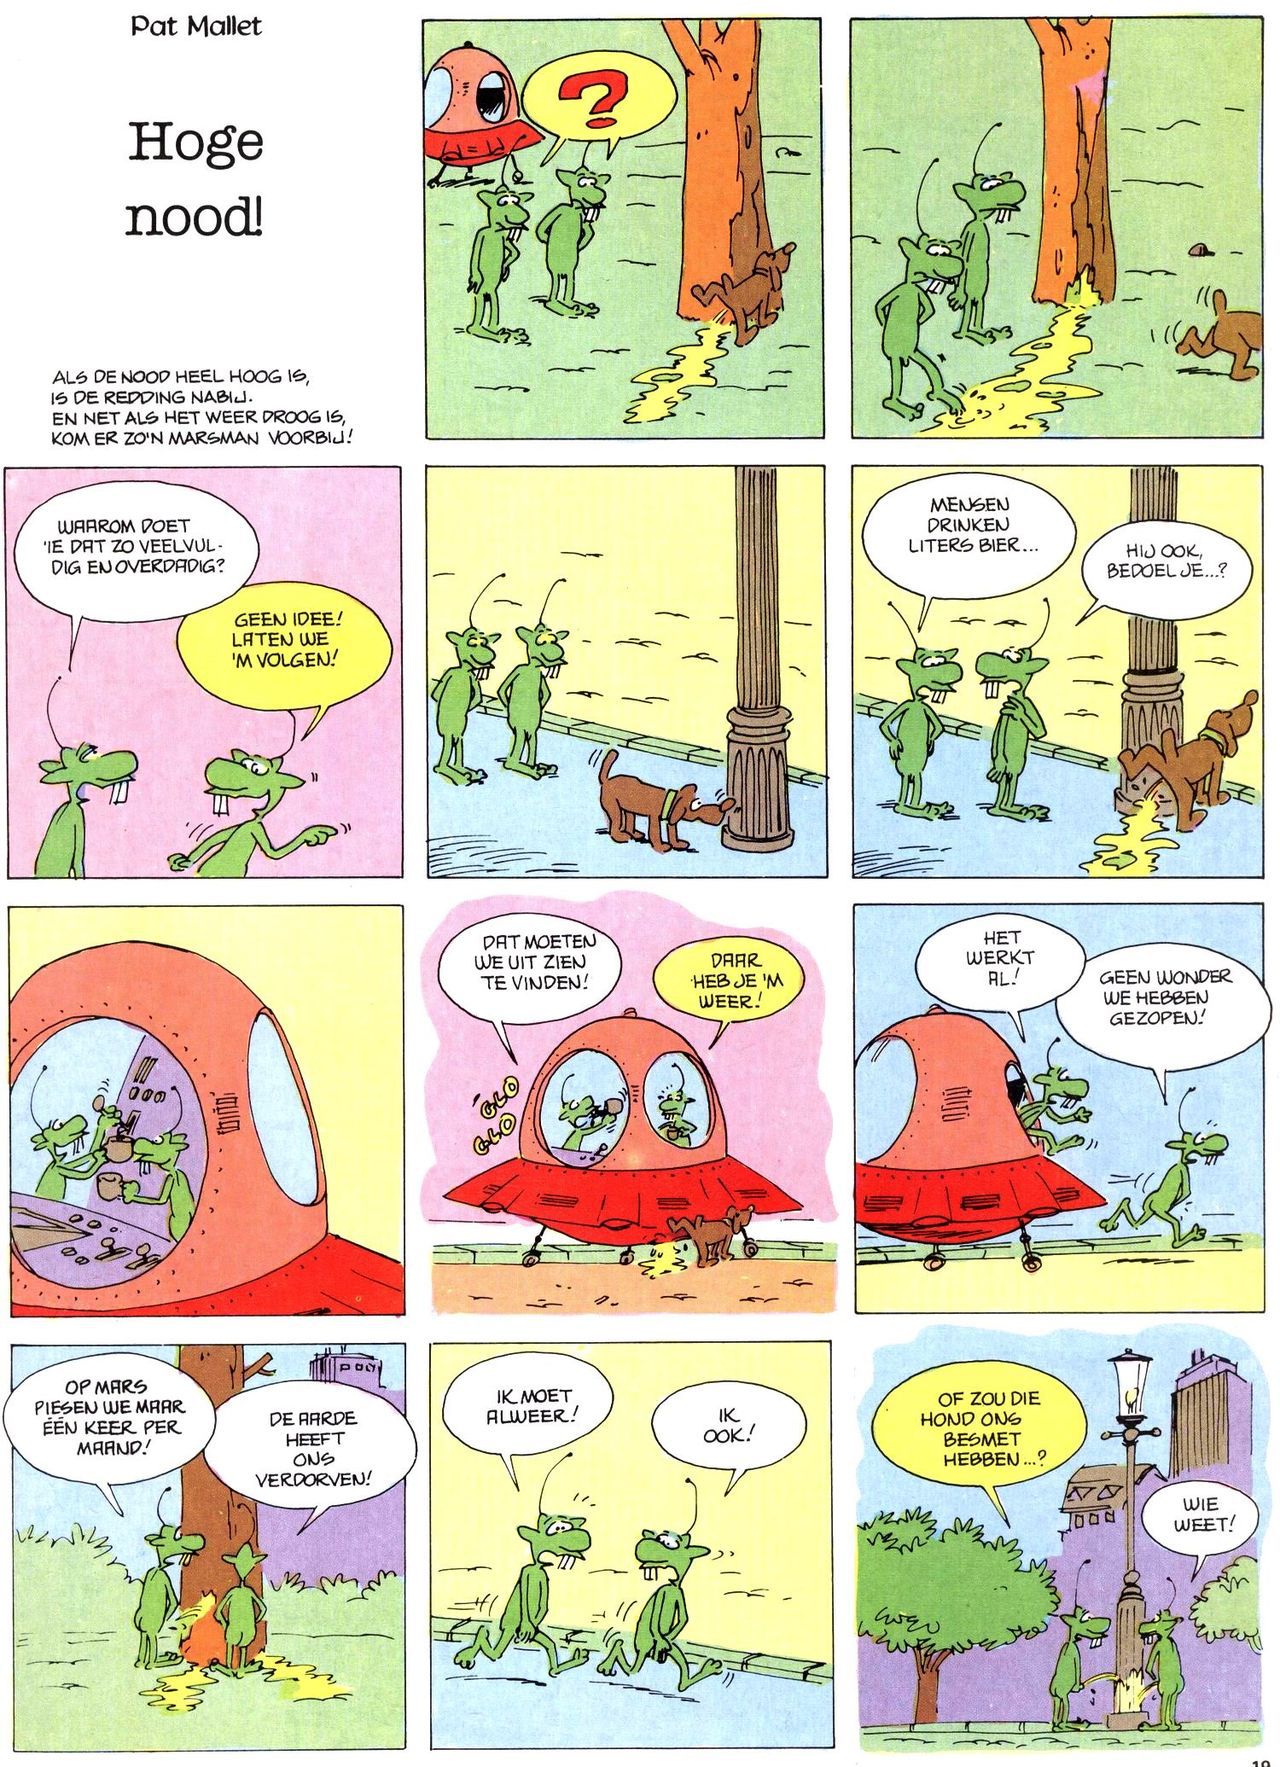 Het Is Groen En Het.. - 02 - Verboden Op Het Gras Te Lopen (Dutch) Een oude humoristische serie van Pat Mallet 17